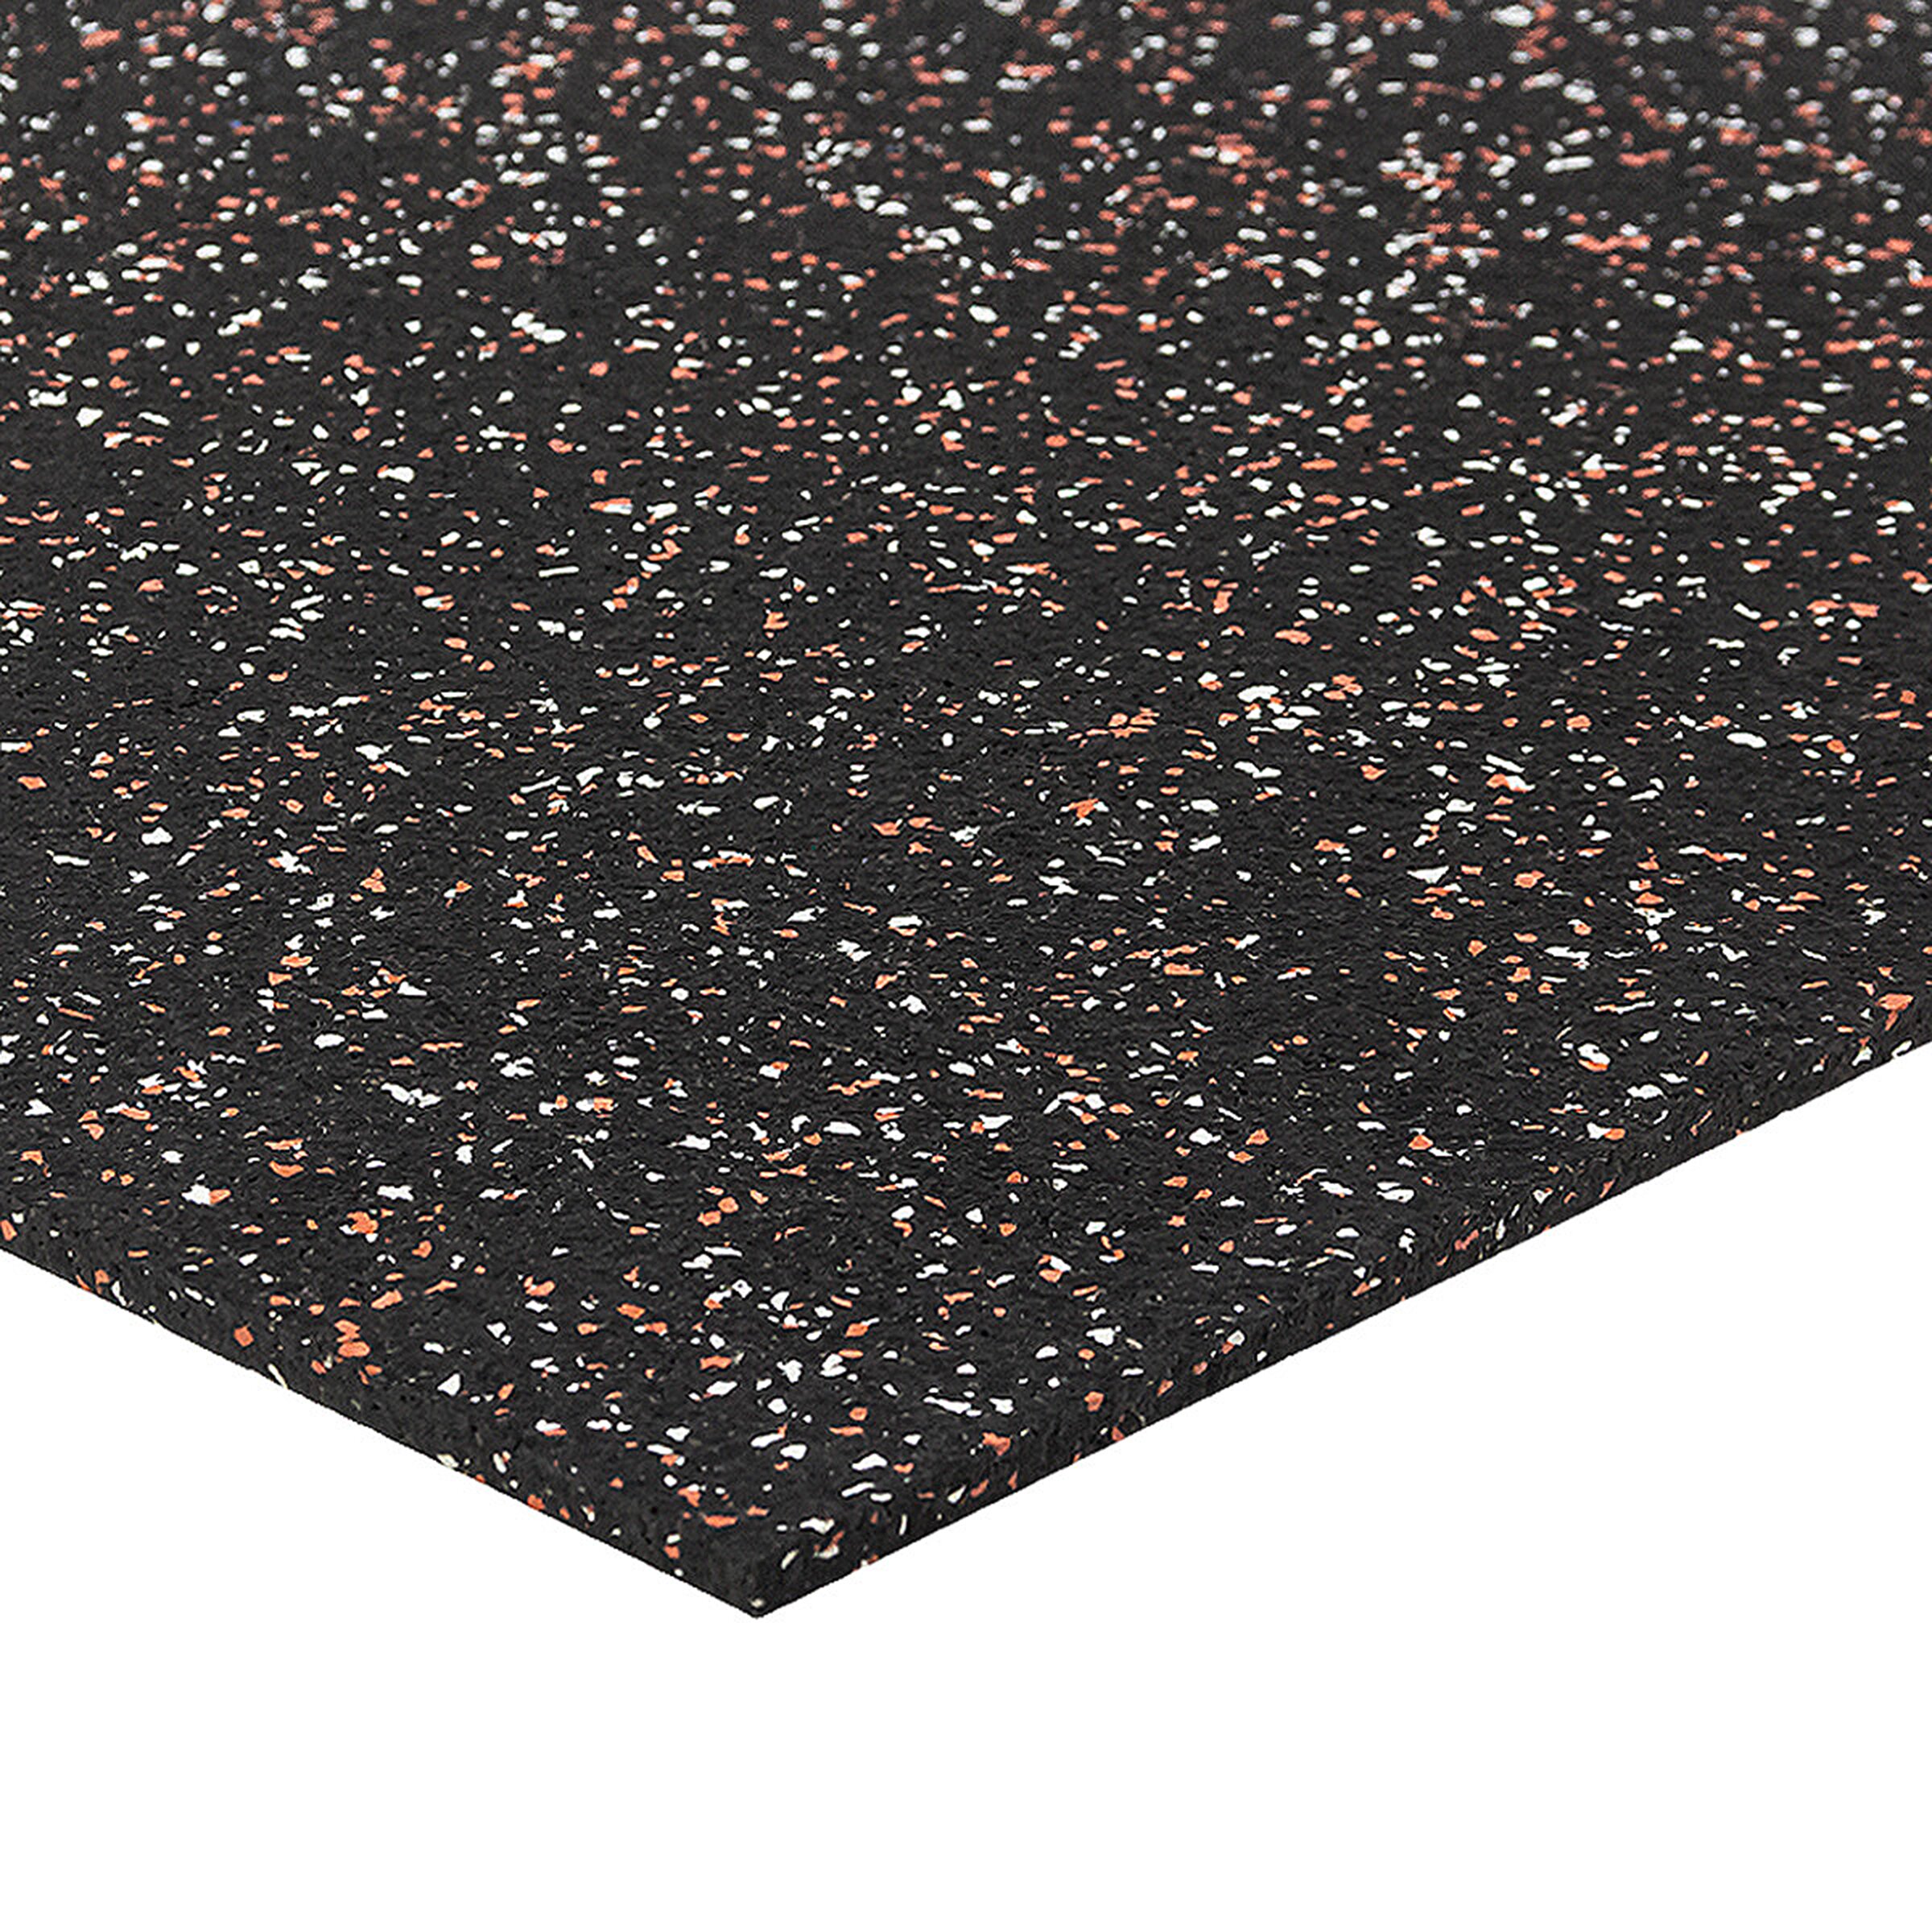 Černo-bílo-červená podlahová guma FLOMA FitFlo SF1050 - délka 50 cm, šířka 50 cm, výška 0,8 cm